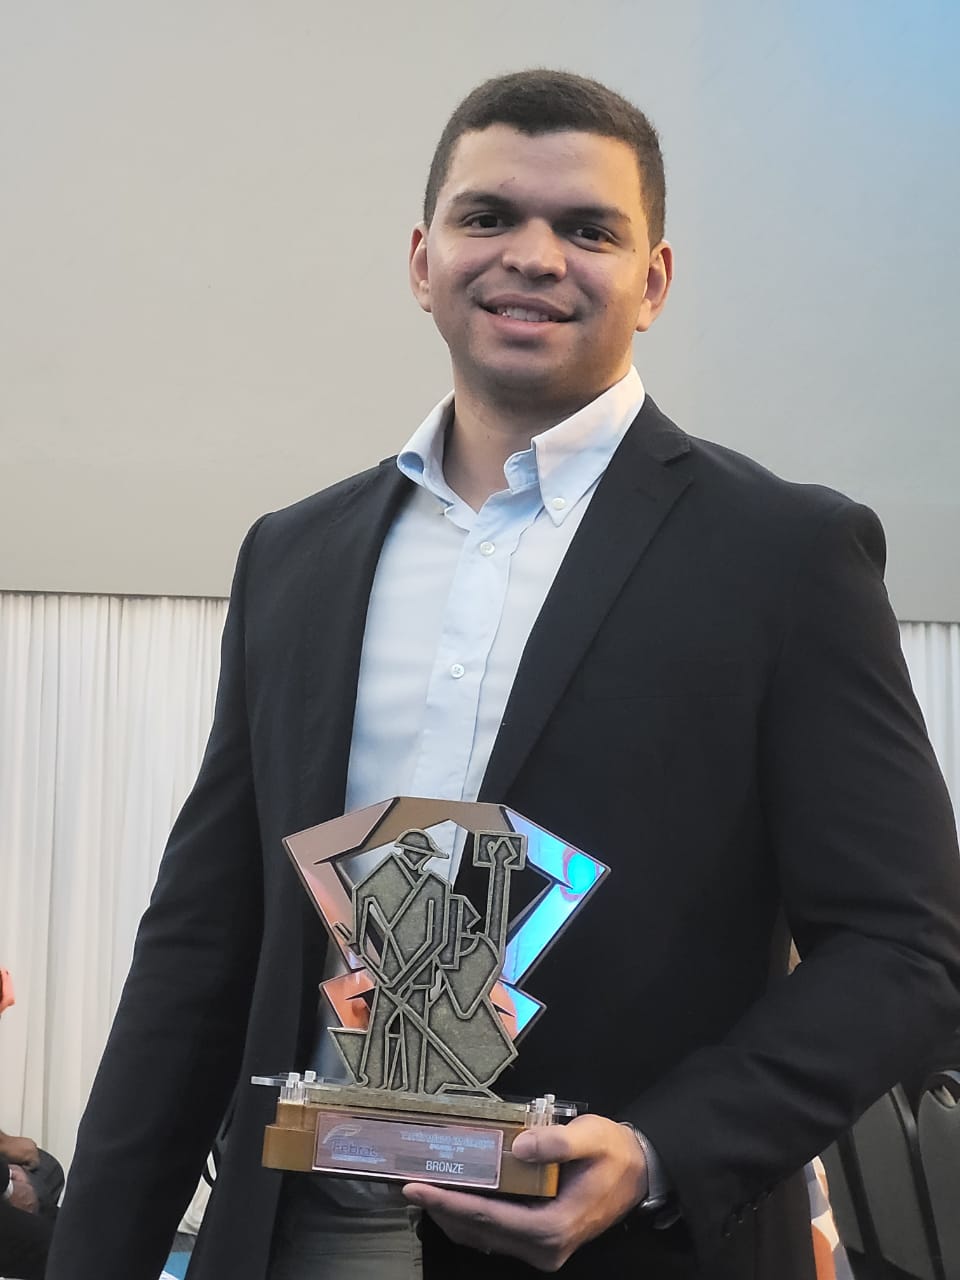 Diretor comercial da JMT, o jovem João Victor recebeu o prêmio no Recife 